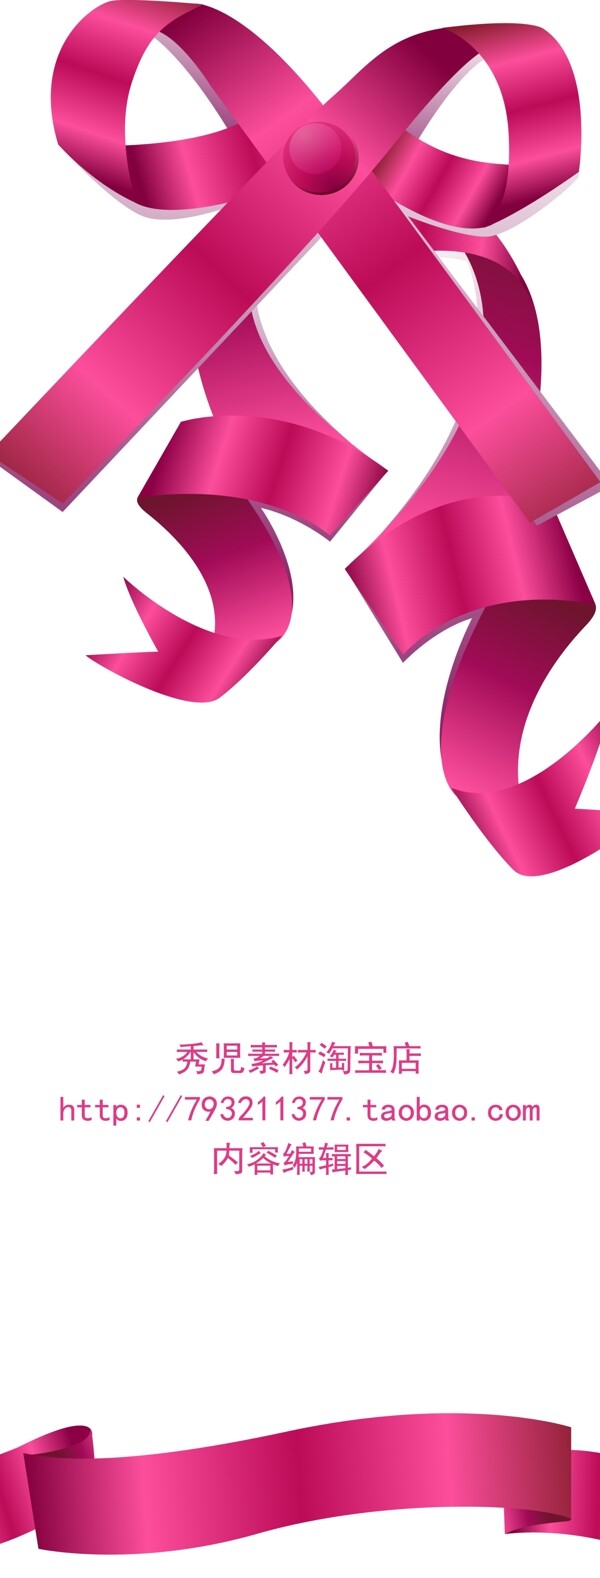 粉色中国结素材展架模板设计